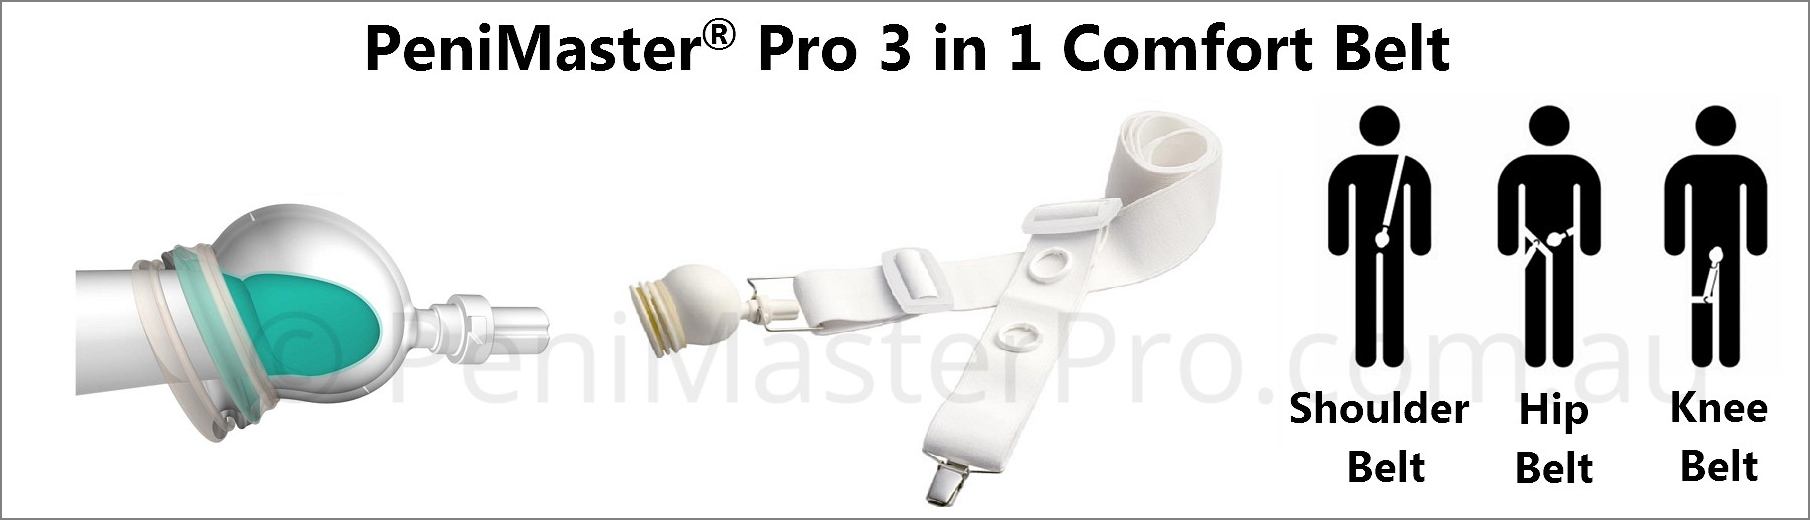 PeniMaster Pro Comfort Belt